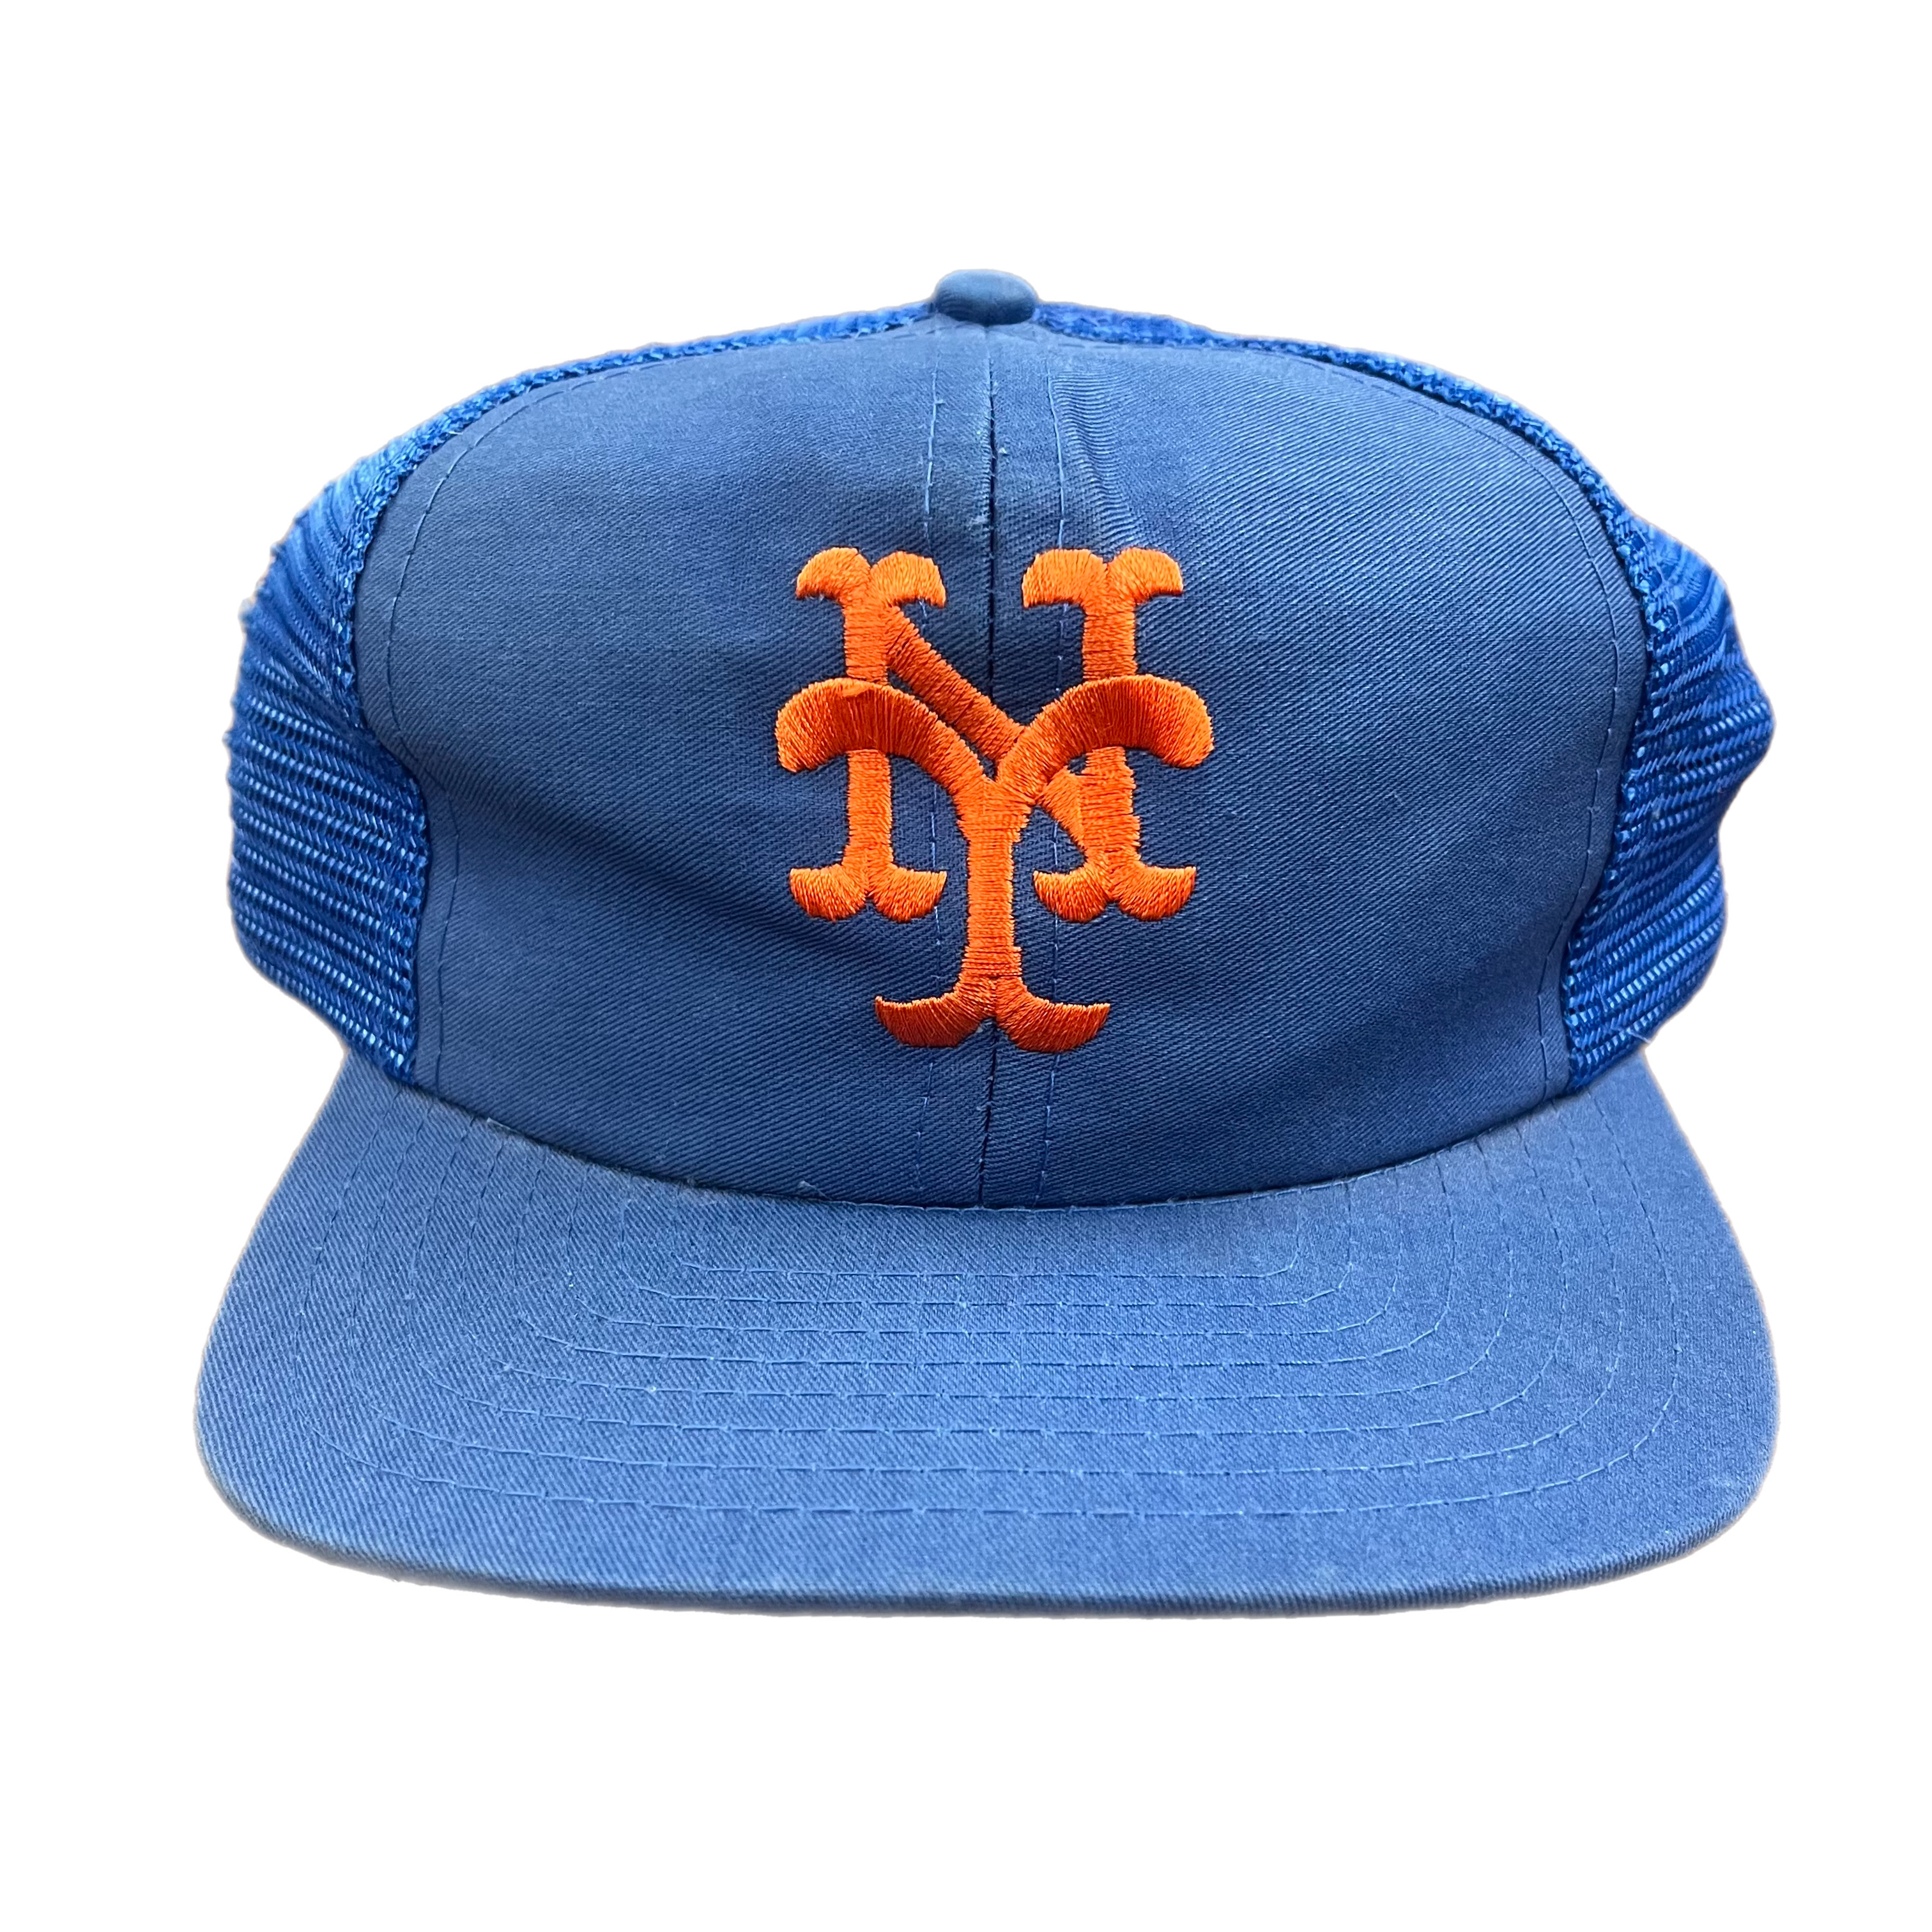 Vintage New York Mets 